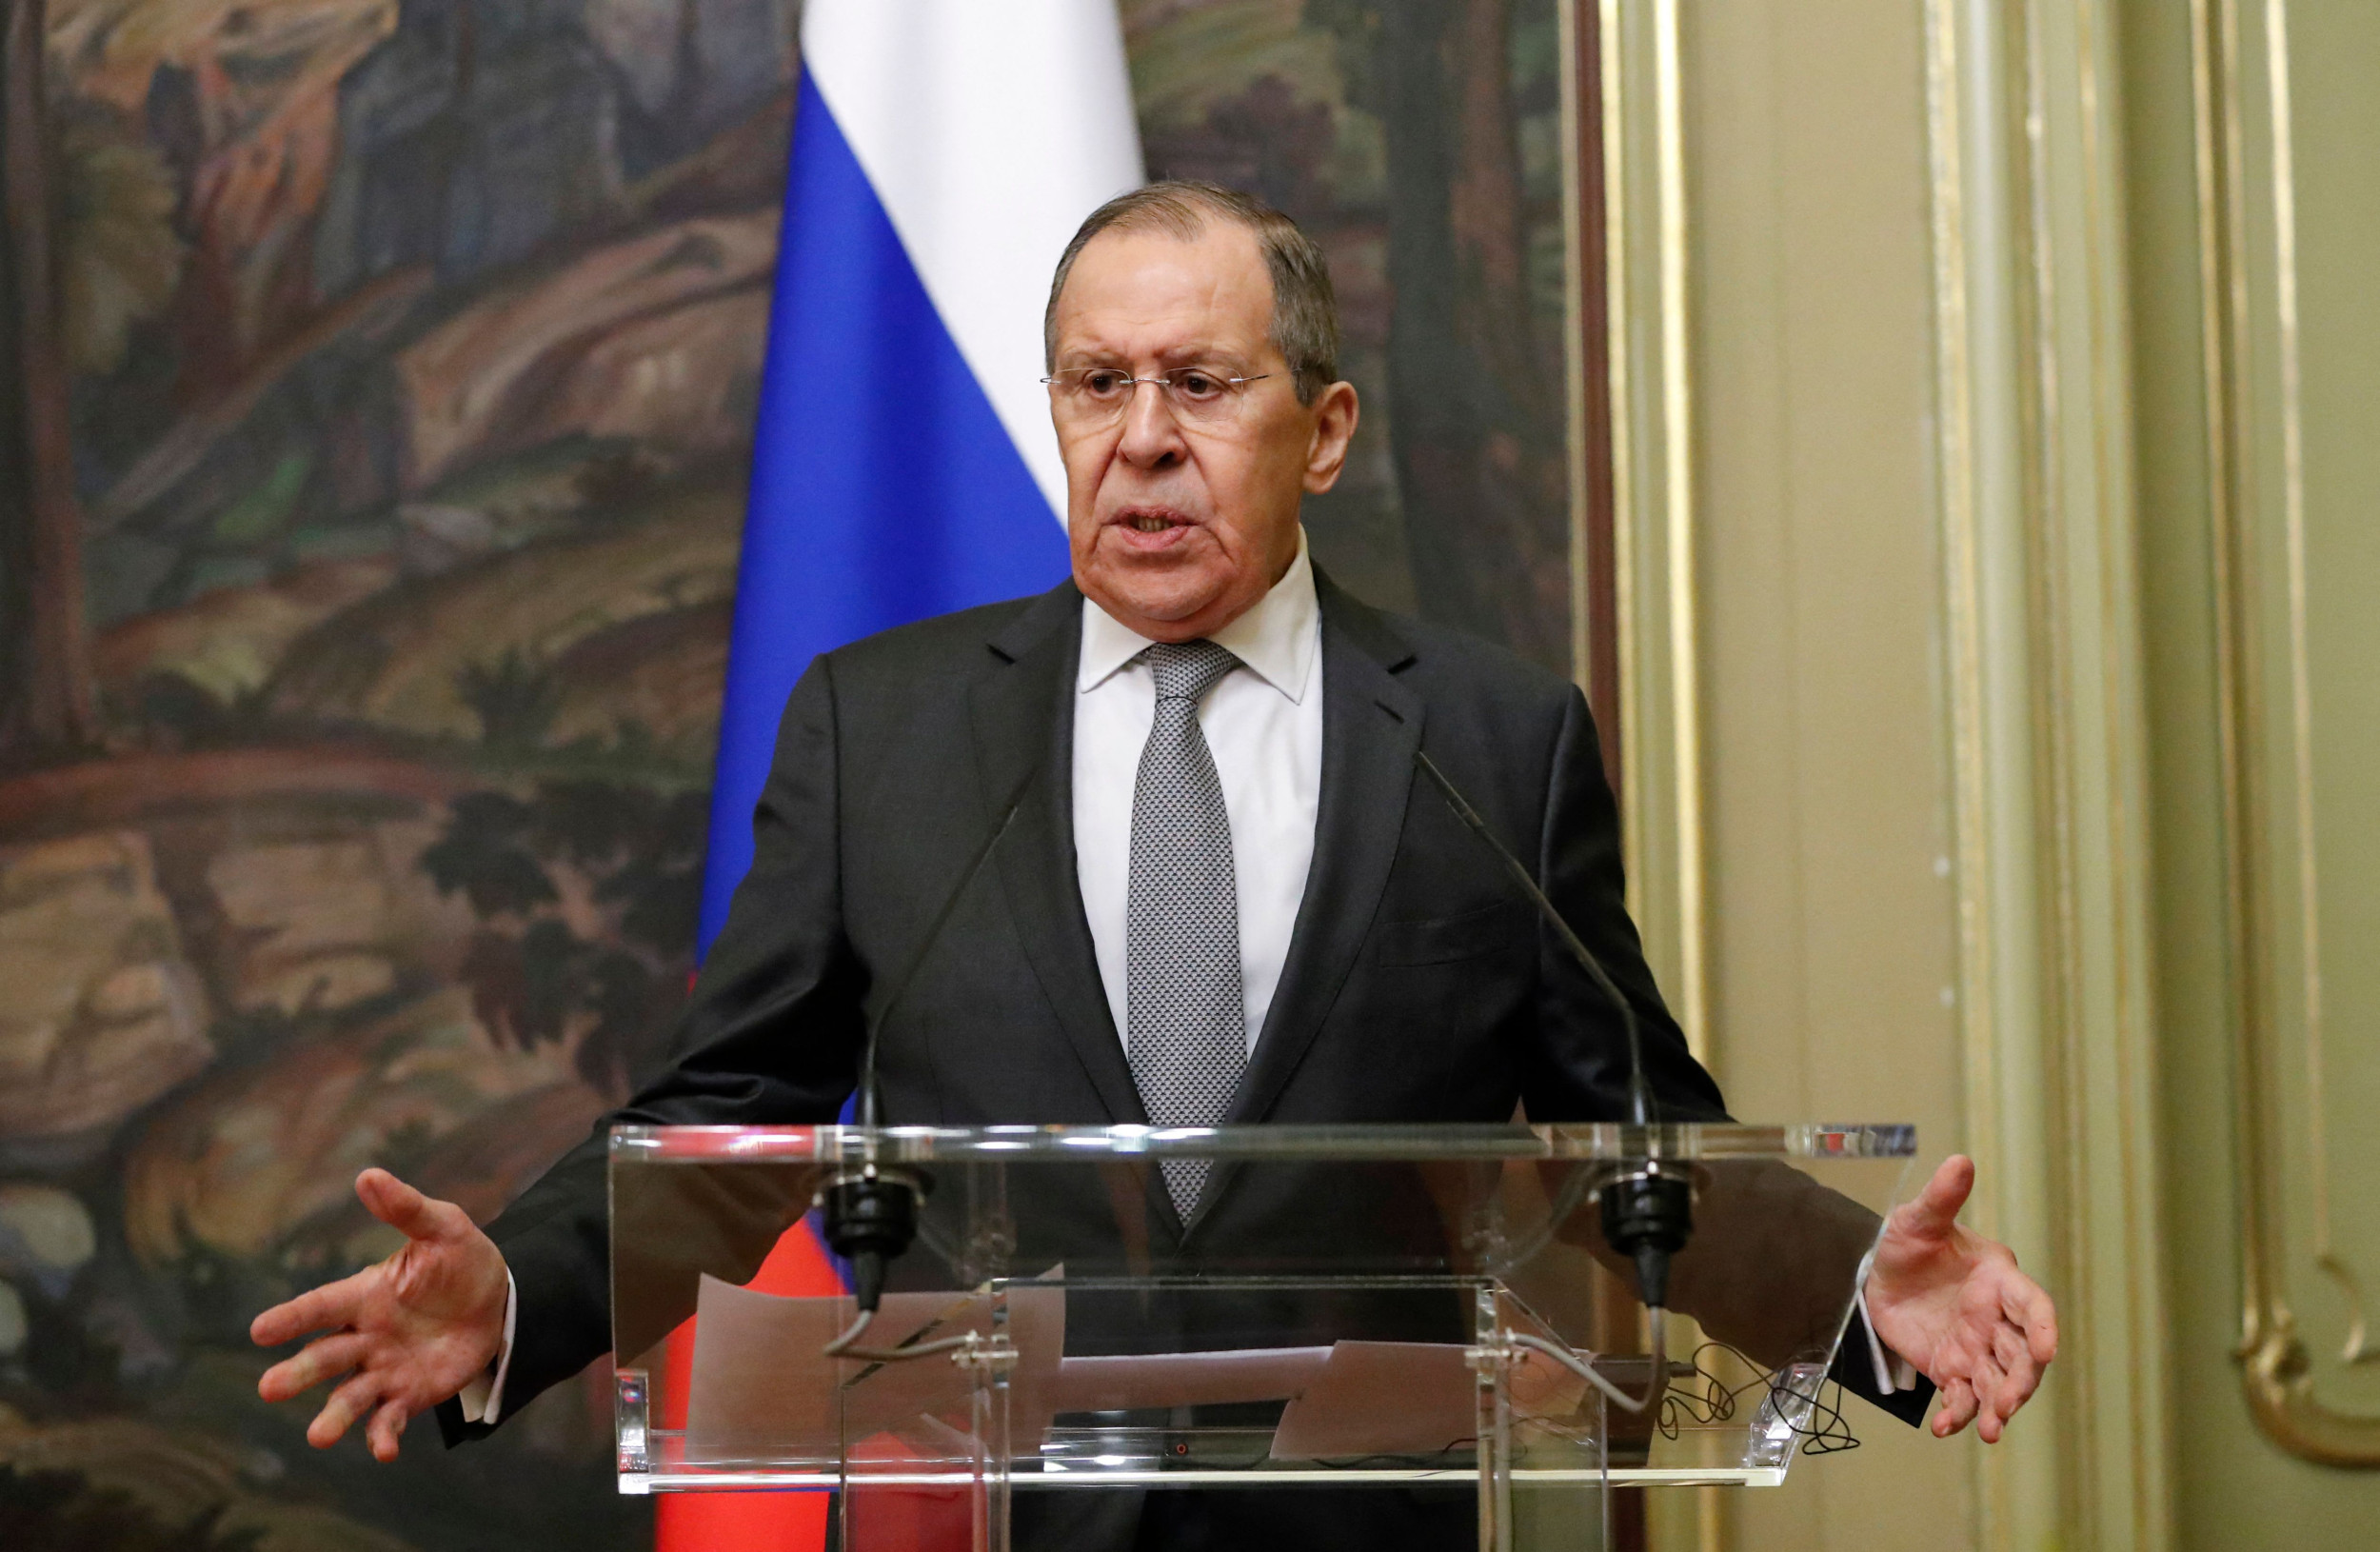 Le dichiarazioni dell'alleato di Putin fanno temere un'invasione da parte della Russia di un altro paese europeo